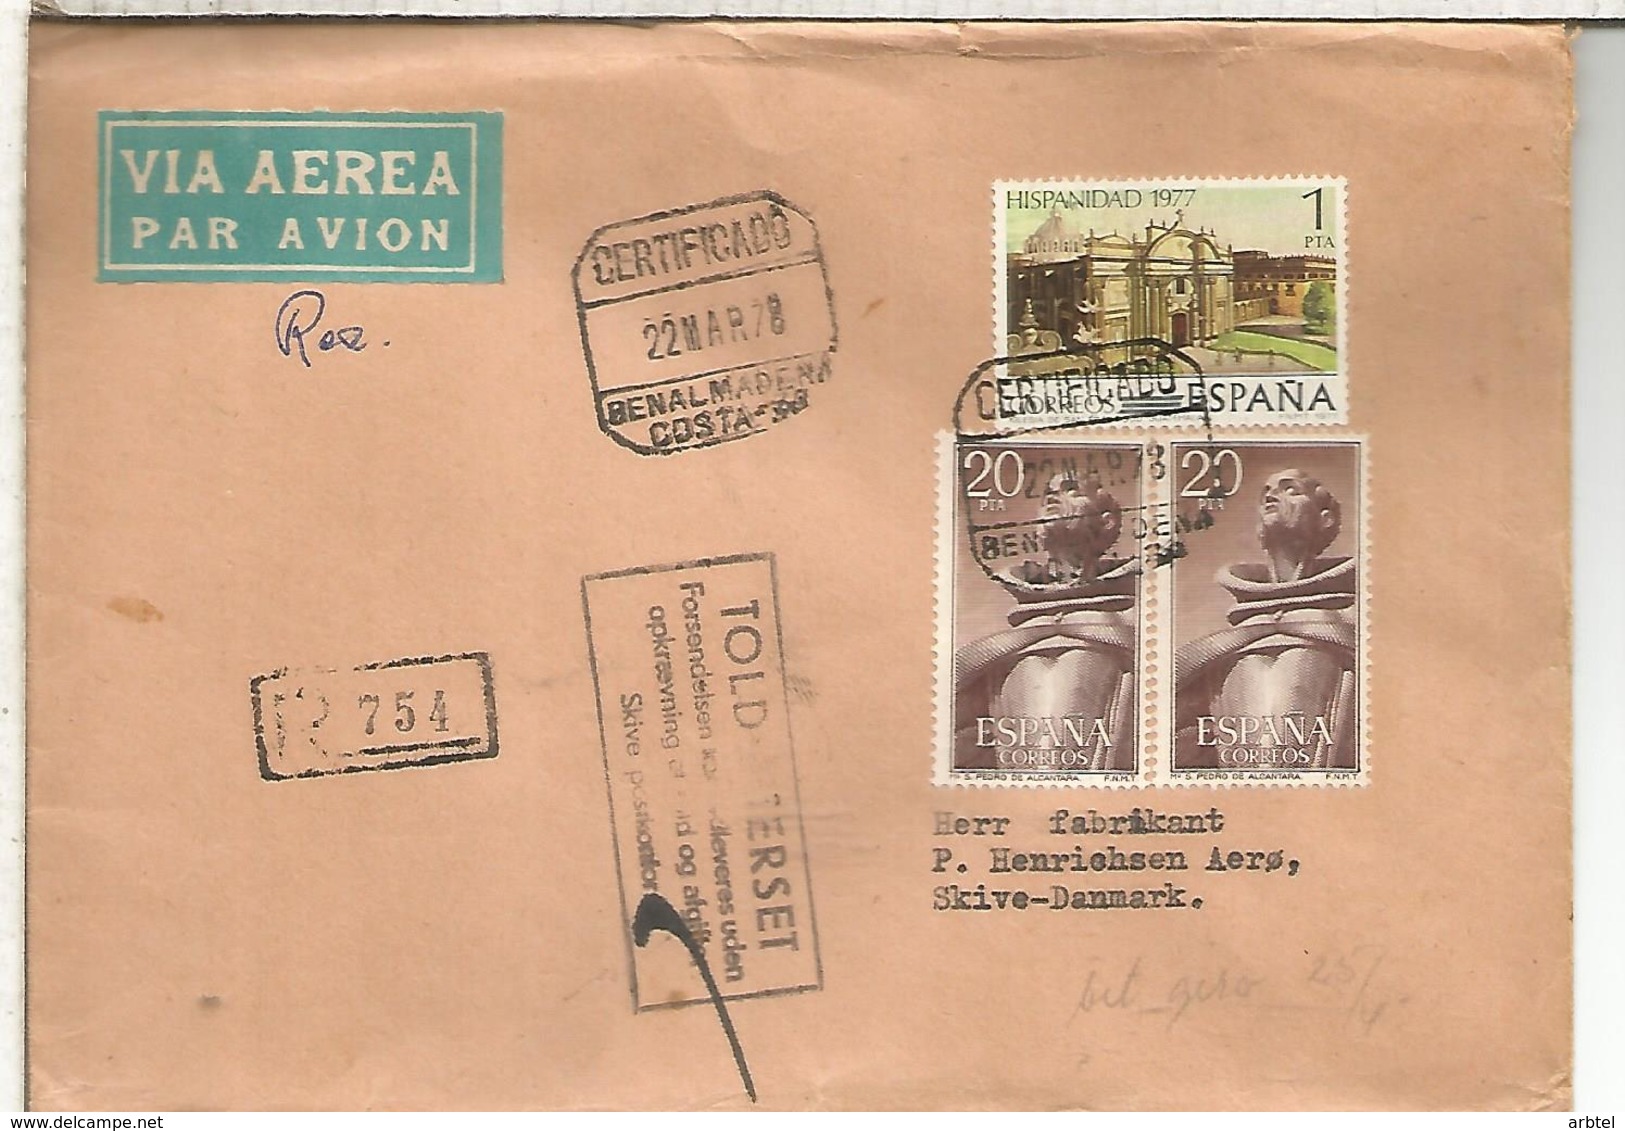 BENALMADENA MALAGA C C CERTIFICADA SELLOS SAN PEDRO DE ALCANTARA RELIGION HISPANIDAD 1977 - Cartas & Documentos